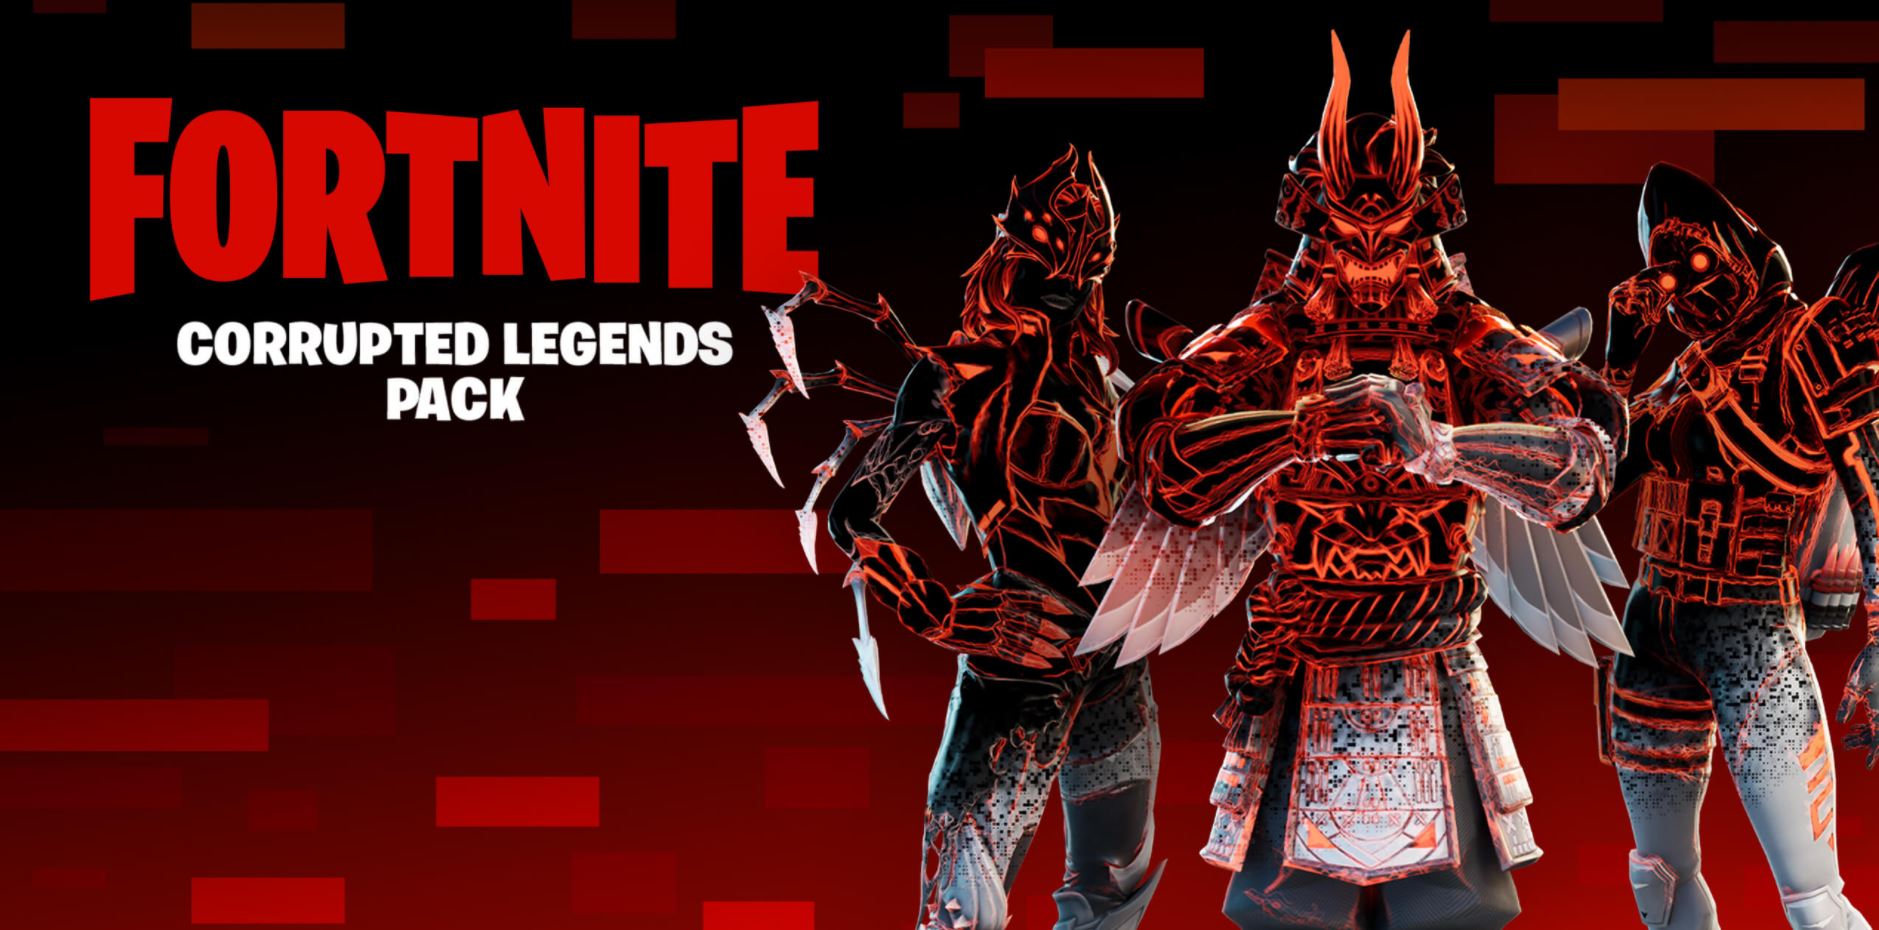 Corrupted Legends Fortnite Pack